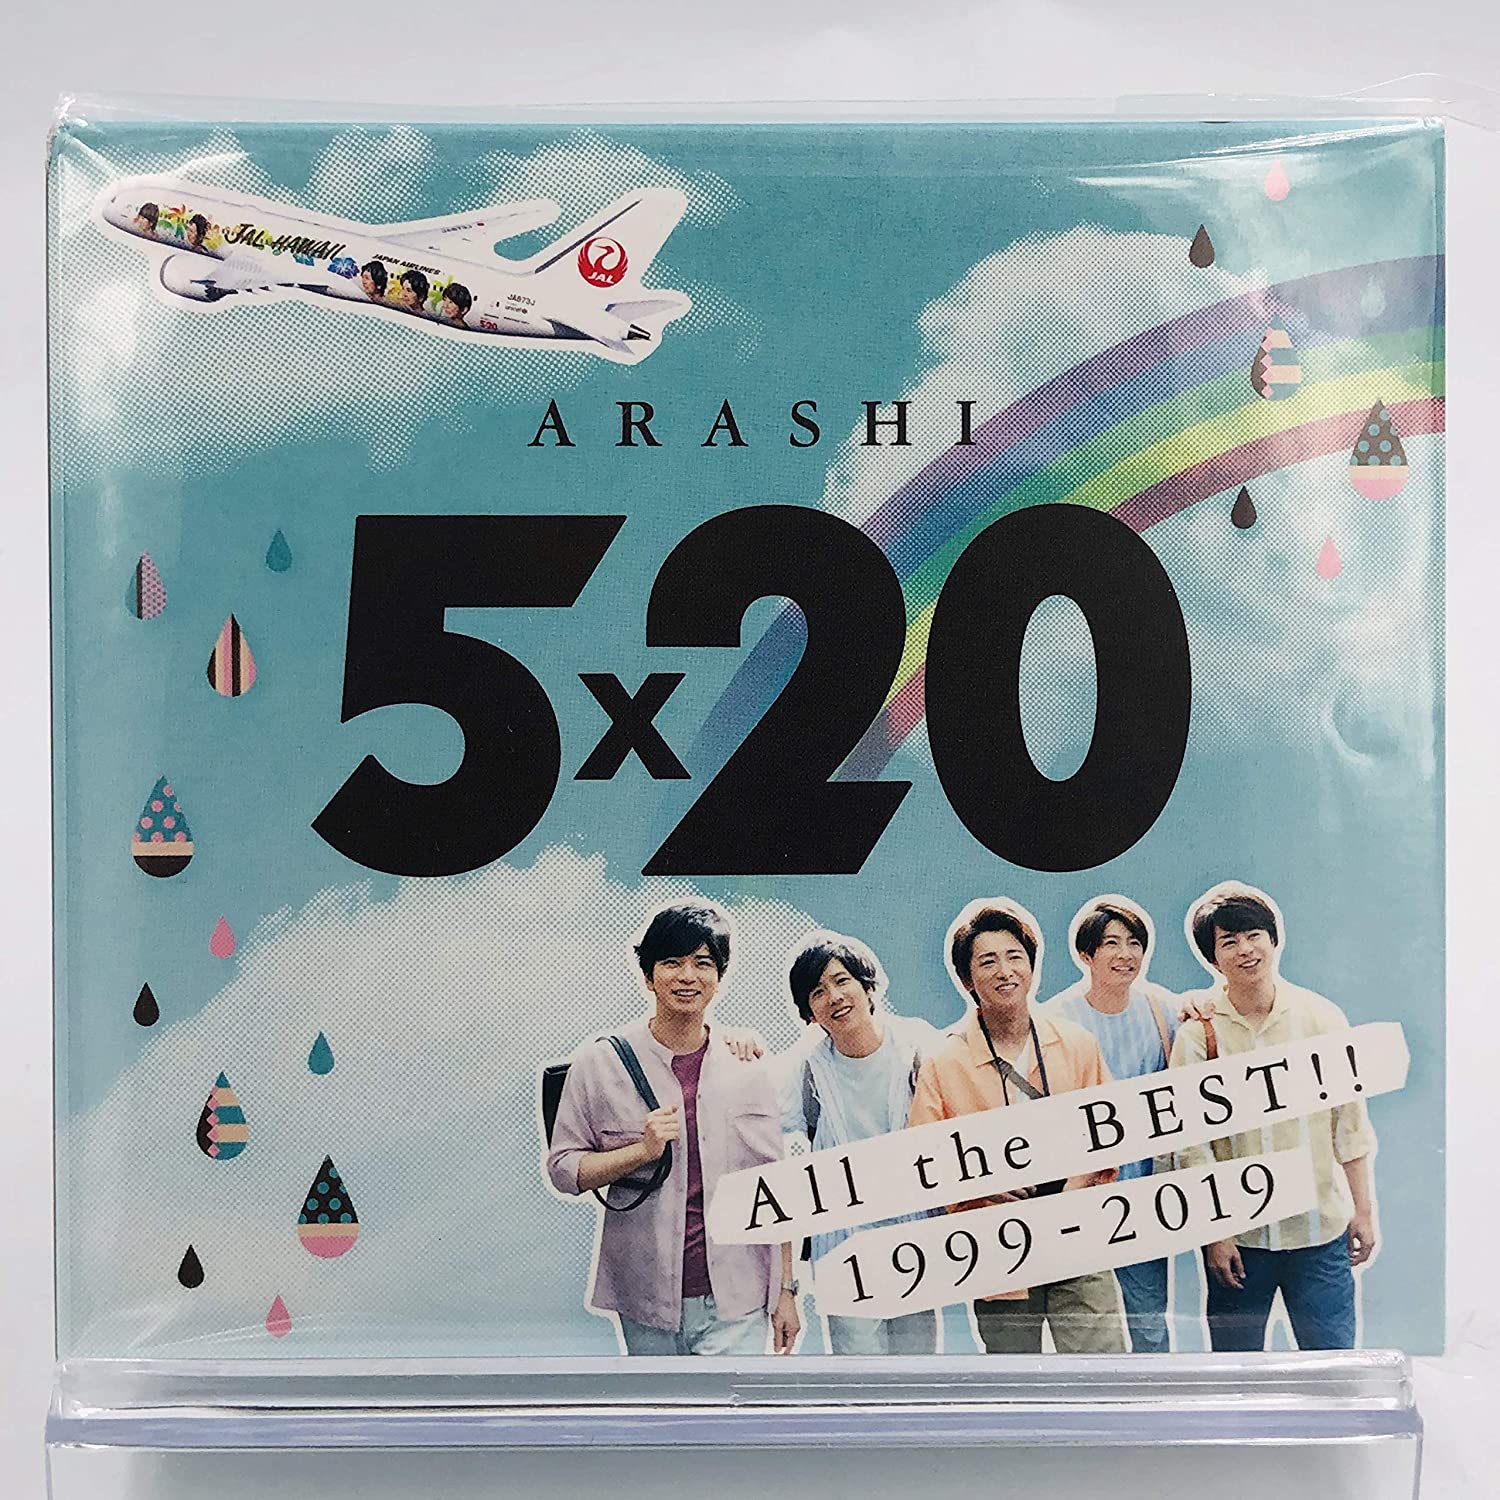 エンタメ/ホビー嵐 ARASHI 5×20 アルバム JALハワイ線限定盤 日本航空 